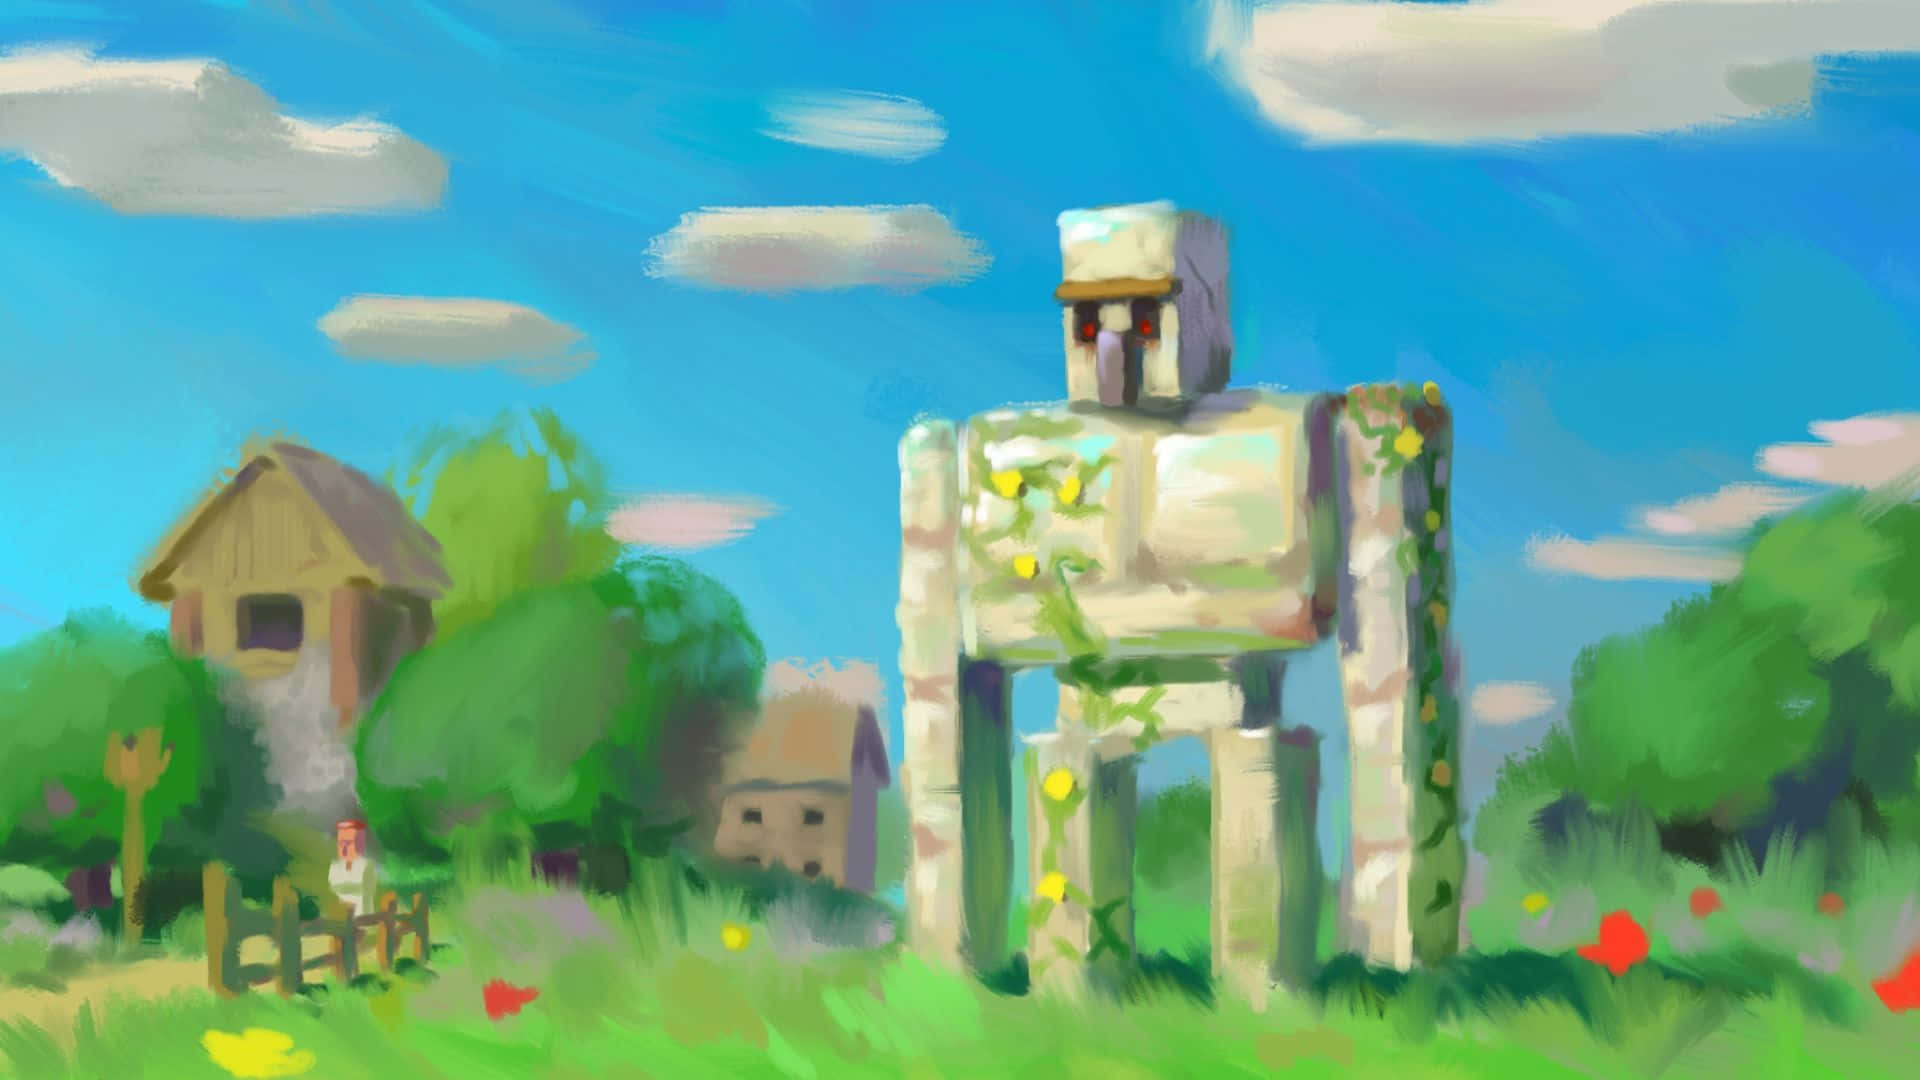 Minecraft Iron Golem standing guard over a village Wallpaper